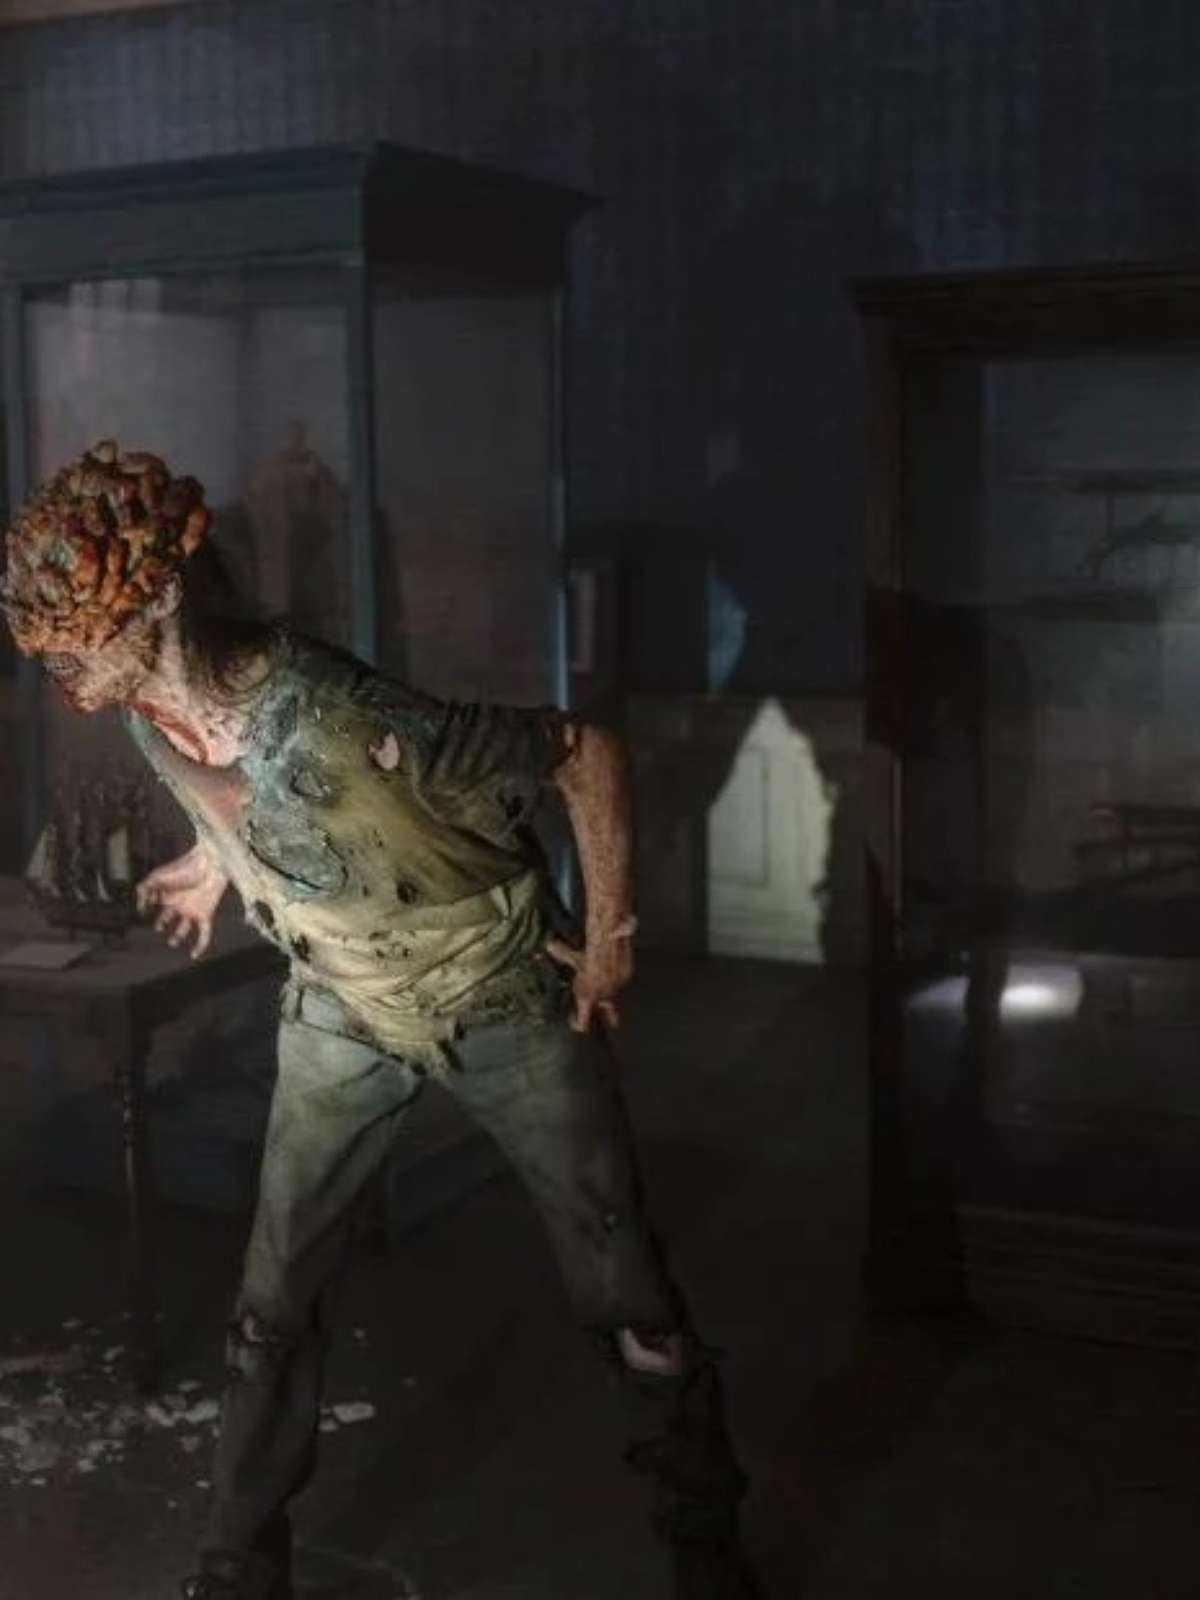 The Last of Us: conheça a história do jogo que se tornou série da